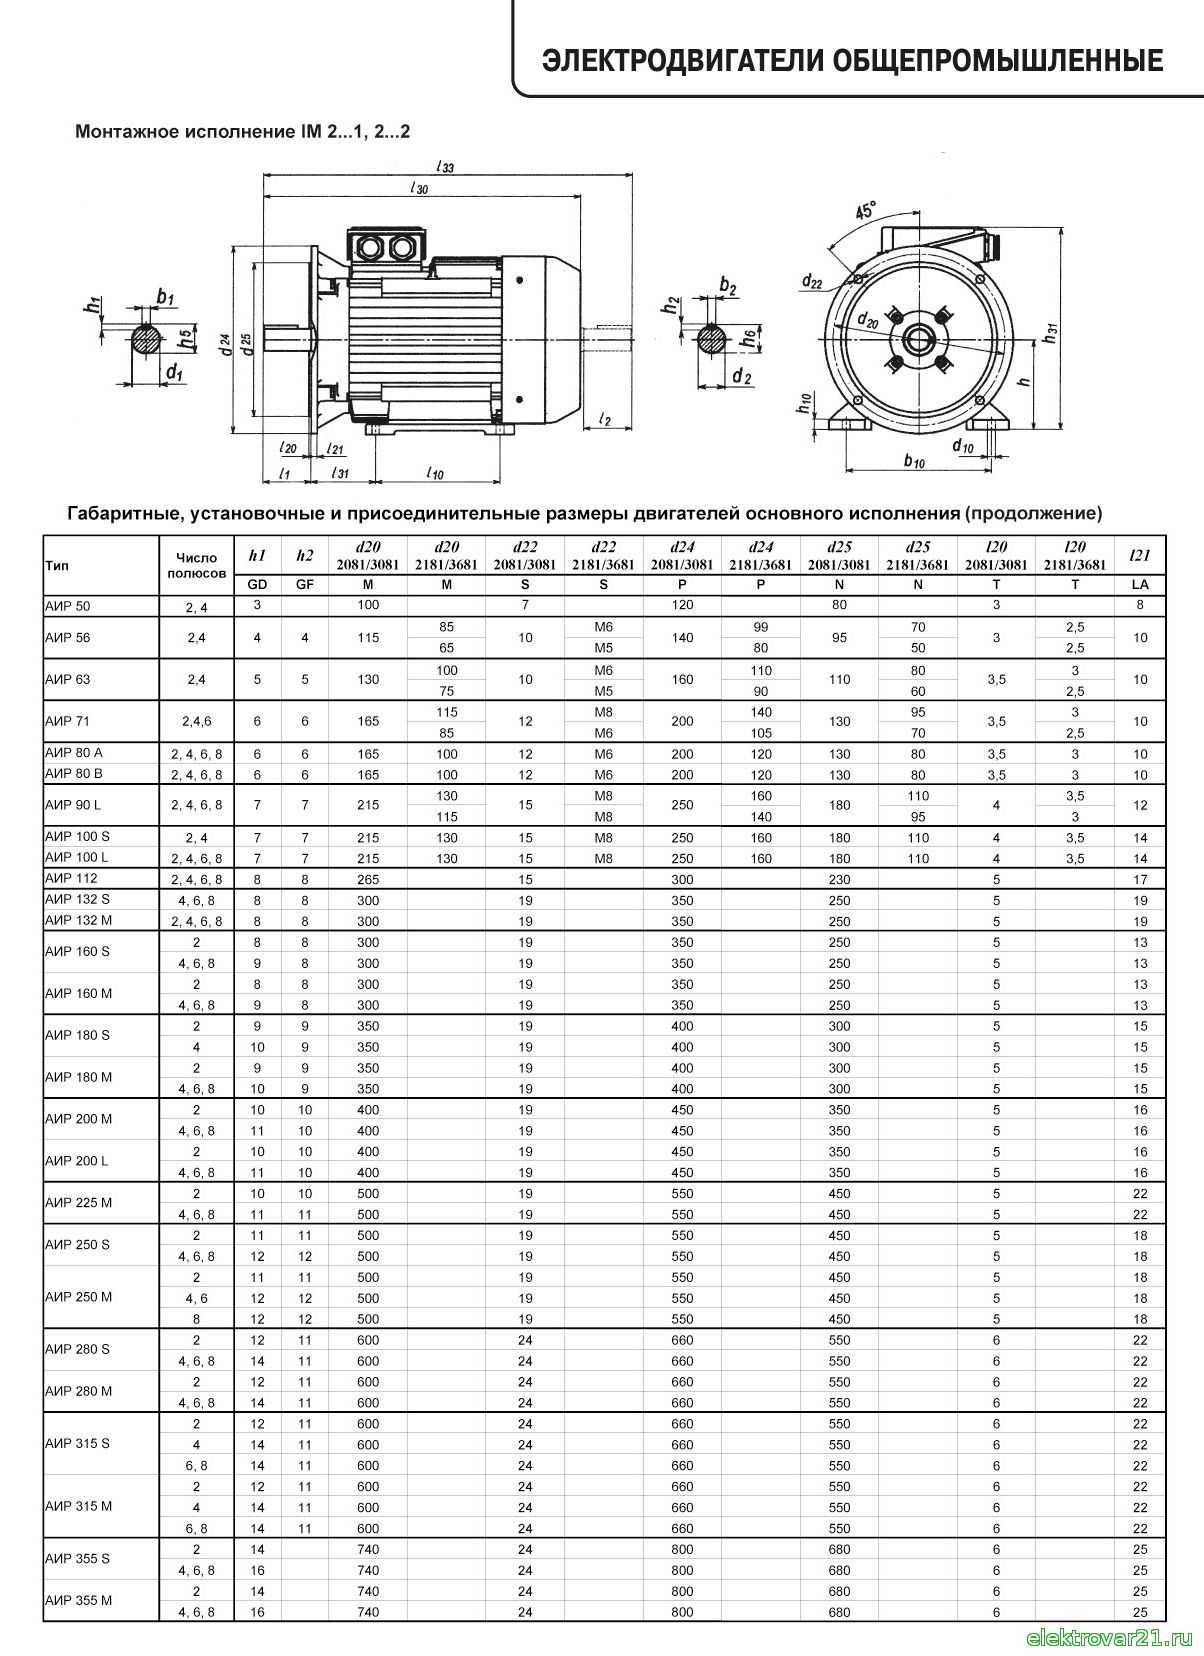 Параметры асинхронного двигателя ~ электропривод - информационный ресурс по электроприводу